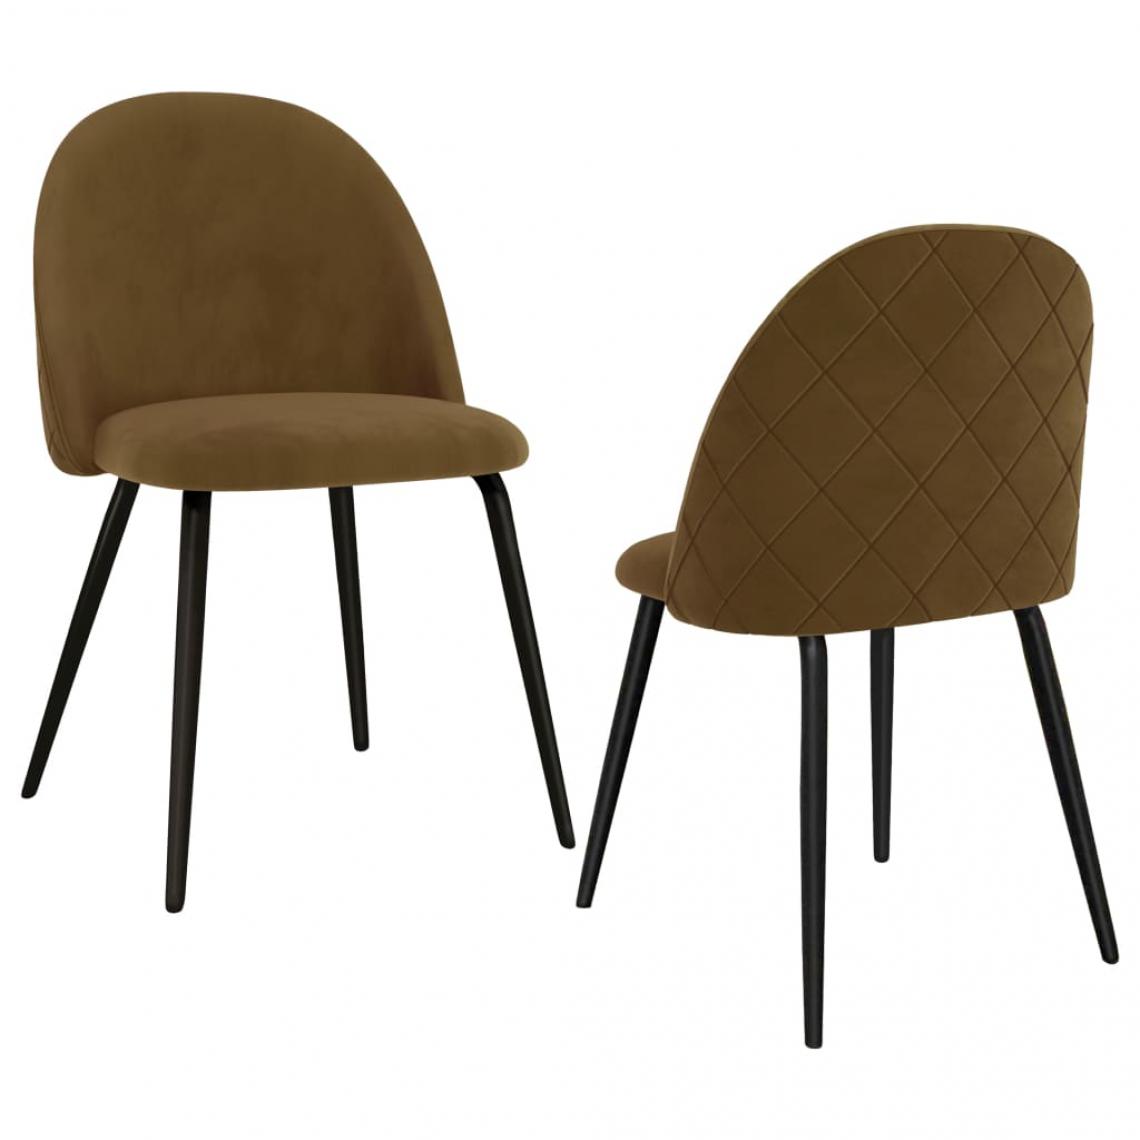 Decoshop26 - Lot de 2 chaises de salle à manger cuisine design moderne tissu marron CDS020773 - Chaises